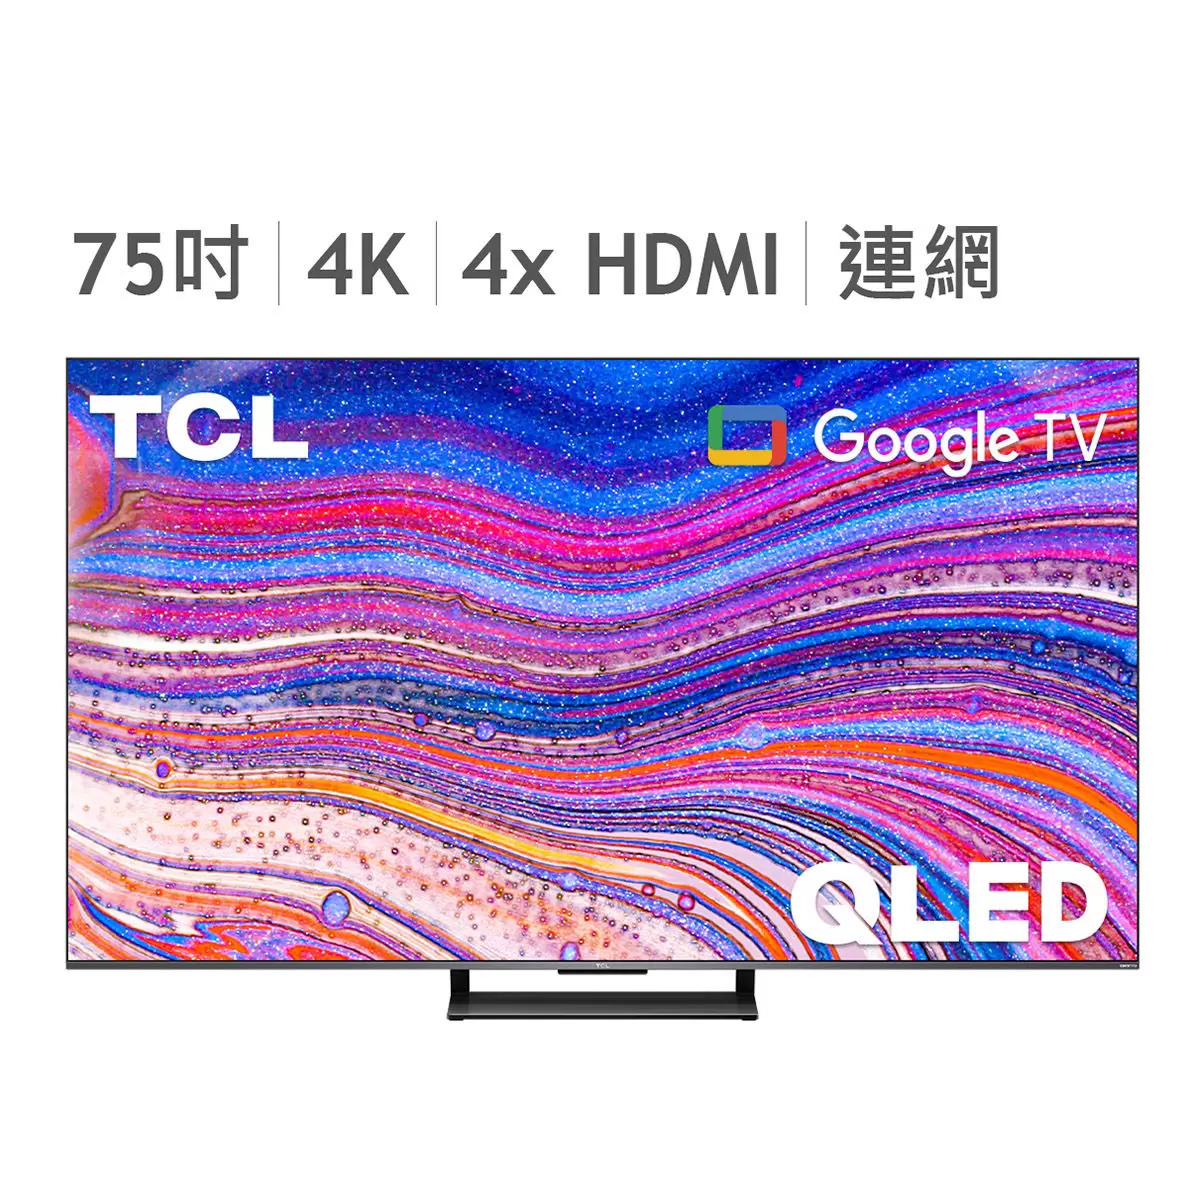 TCL 75吋 4K QLED Google TV 量子智能連網液晶顯示器不含視訊盒 75C735